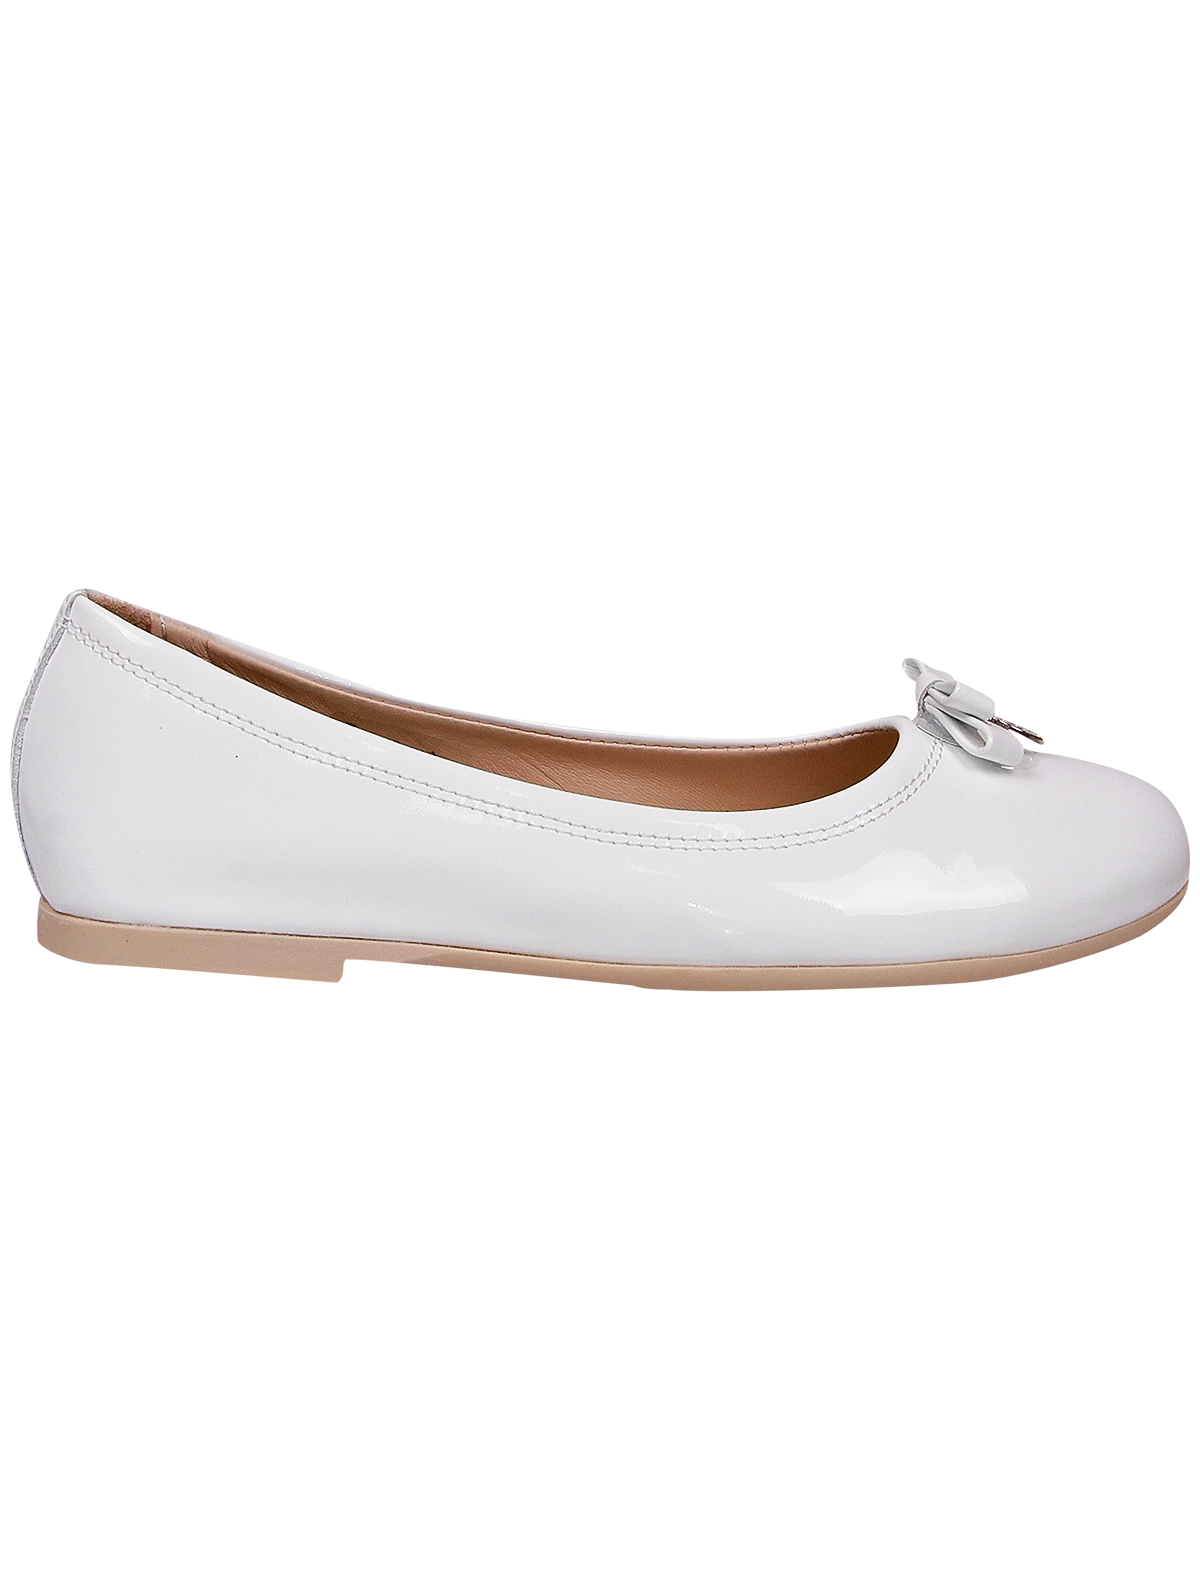 Туфли Florens 1951840, цвет белый, размер 35 2011209970054 - фото 2